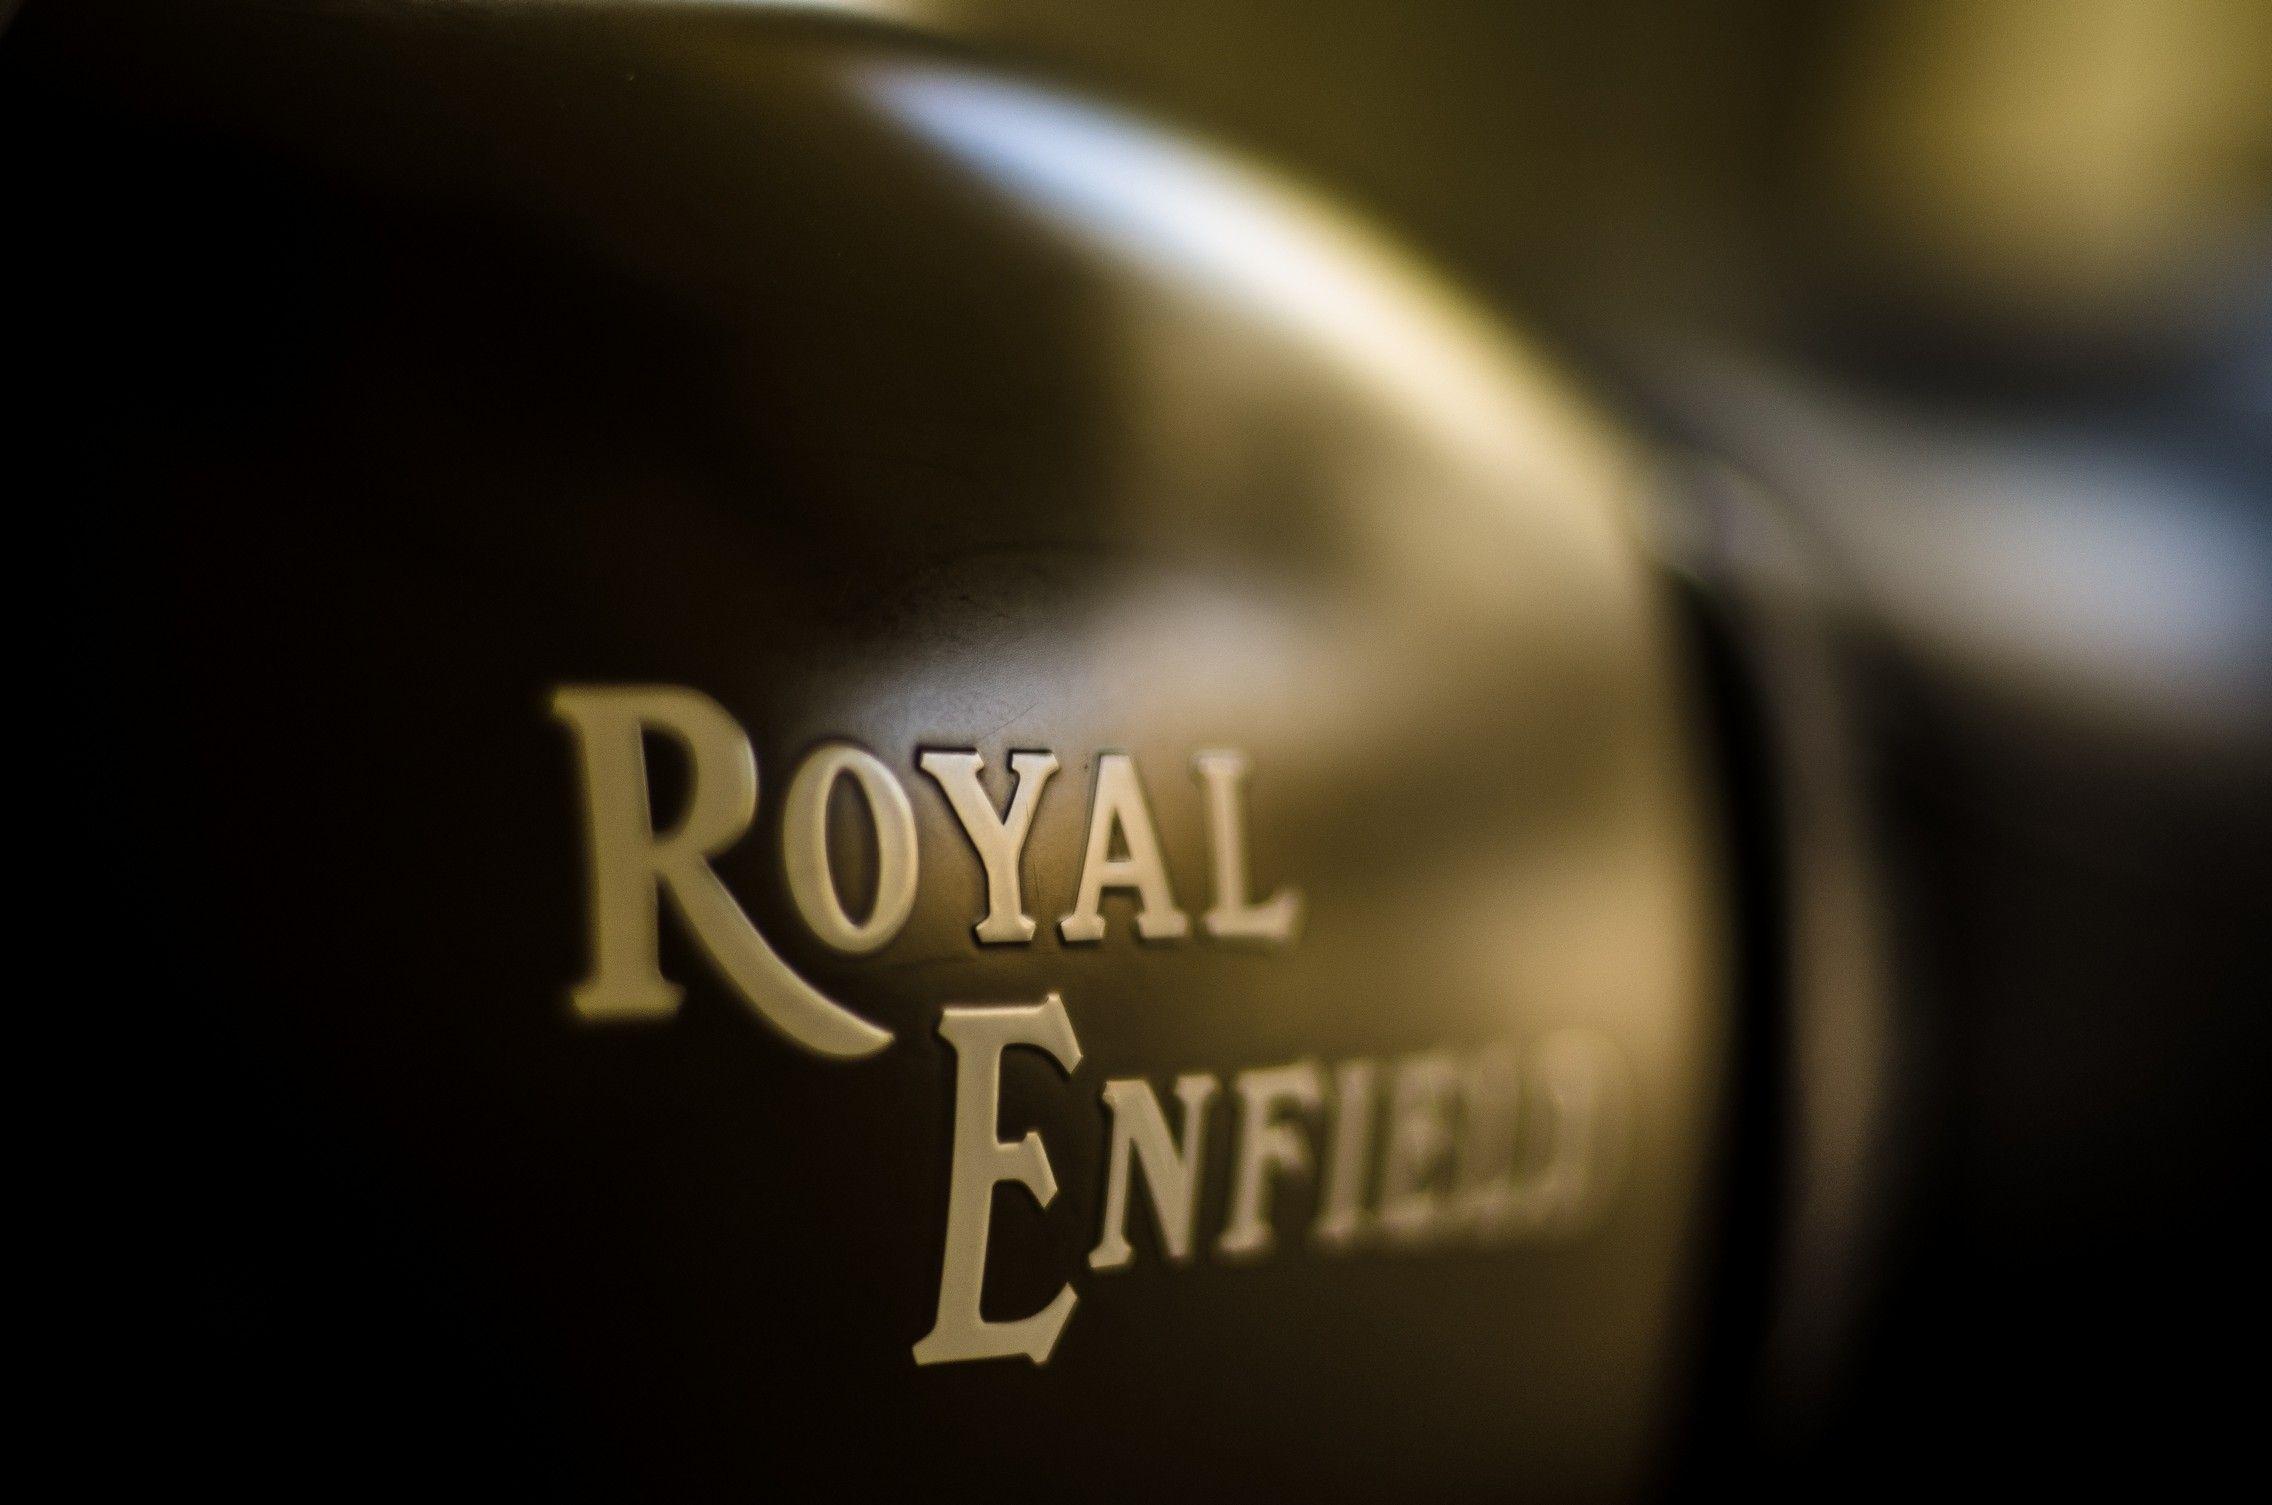 Royal Enfield HD Wallpaper